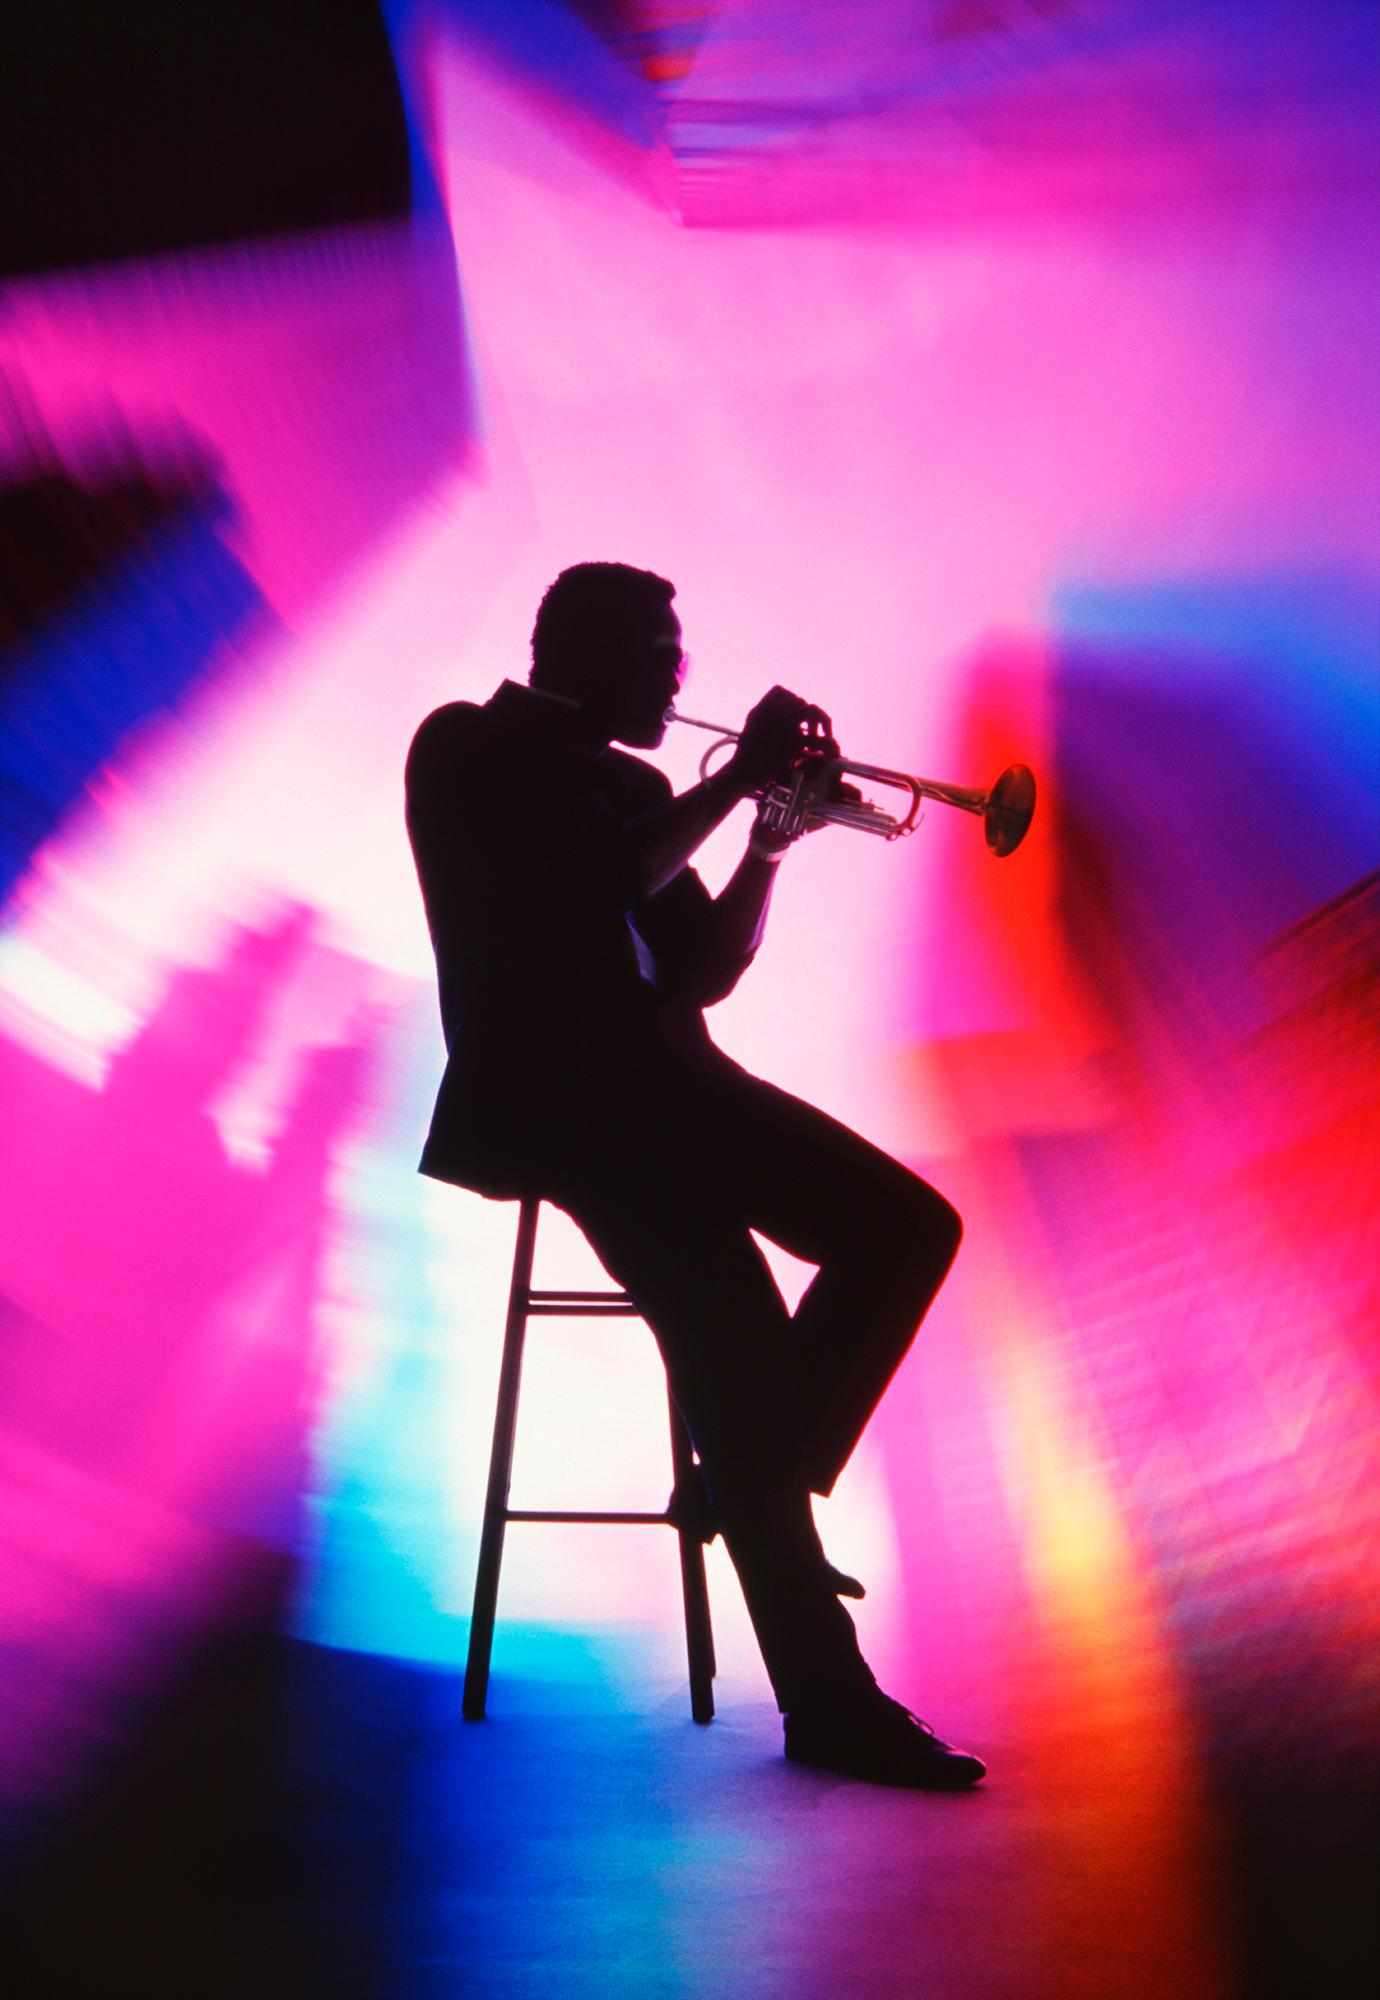 Joueur de trompettes : arc-en-ciel de couleurs pleine d'âme